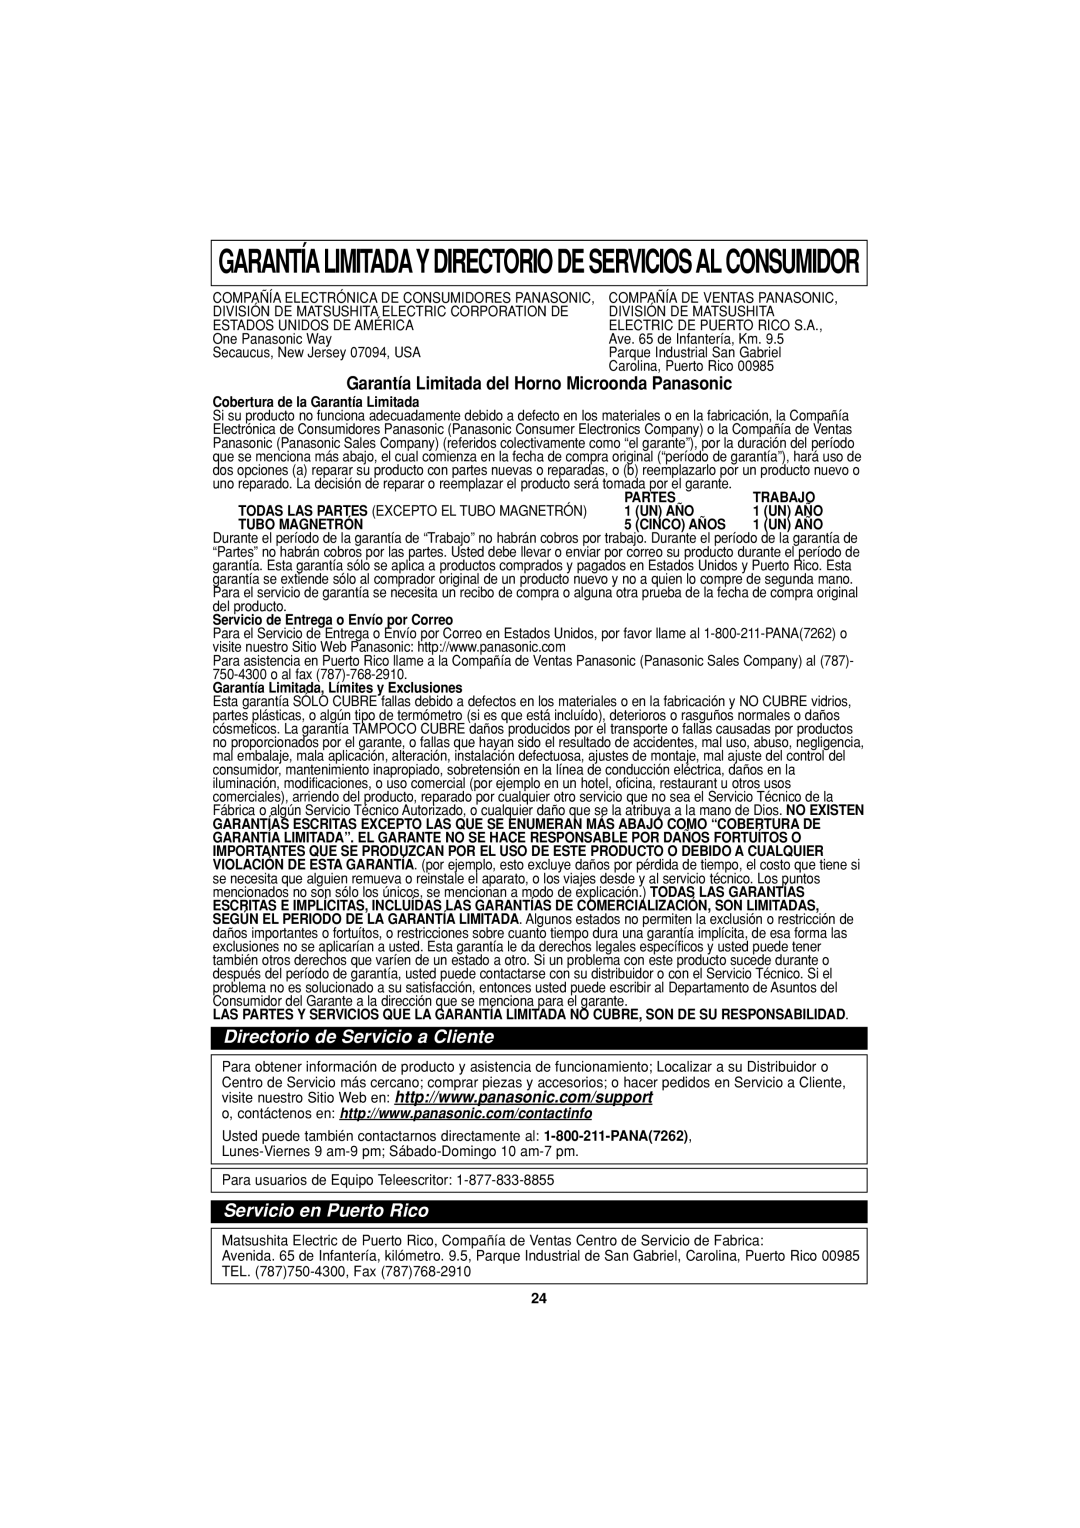 Panasonic NN-S334 important safety instructions Directorio de Servicio a Cliente, Servicio en Puerto Rico 